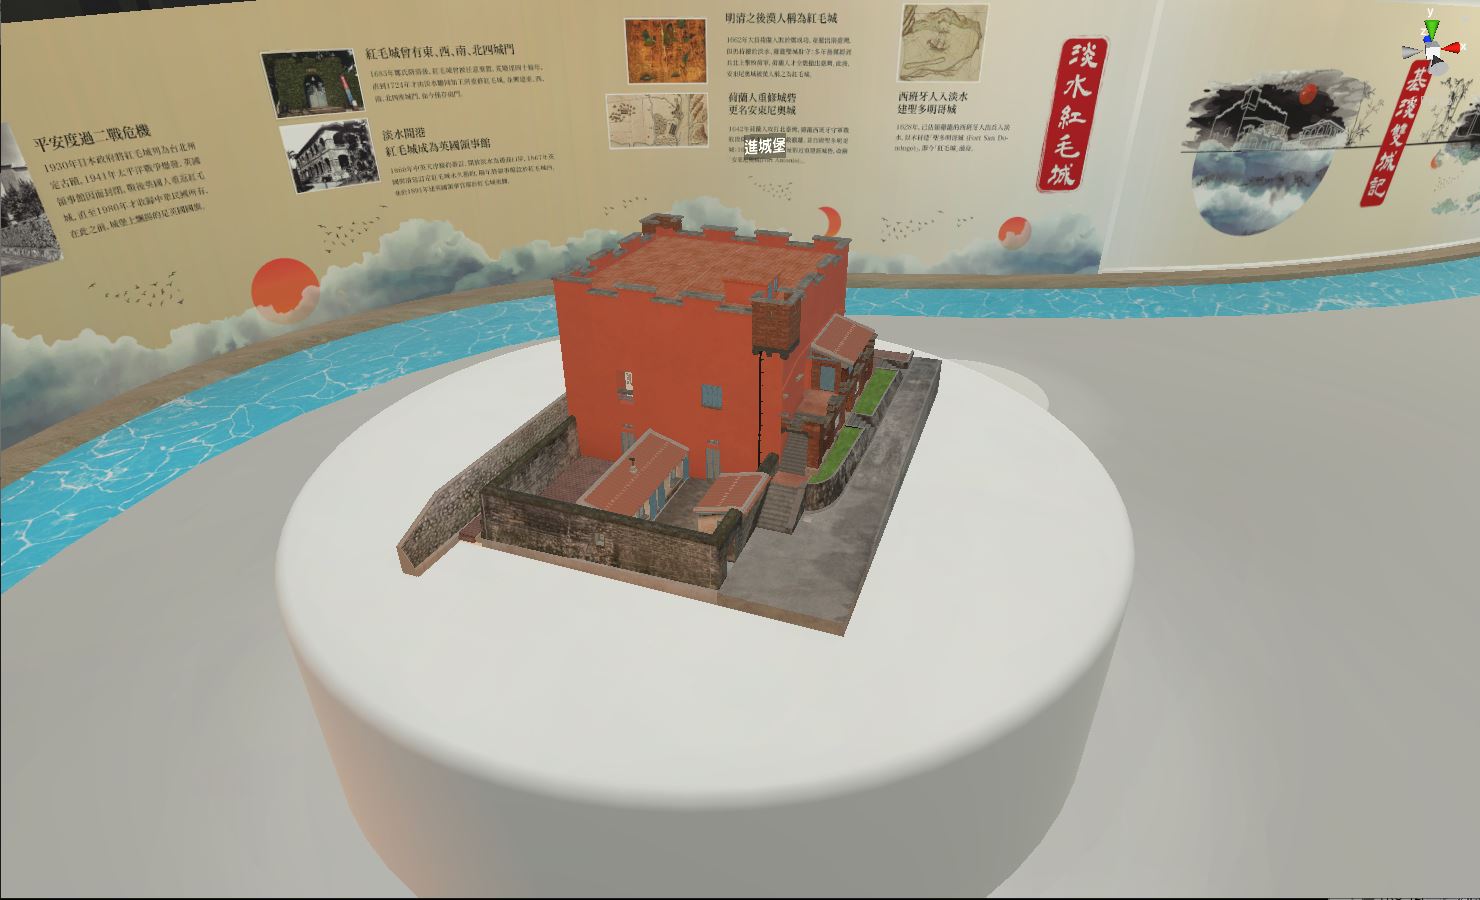 *圖片簡述：淡水紅毛城3D模型 *截圖來源：截自《基淡雙城四百年》之VR APP *截圖日期：2020/10/22